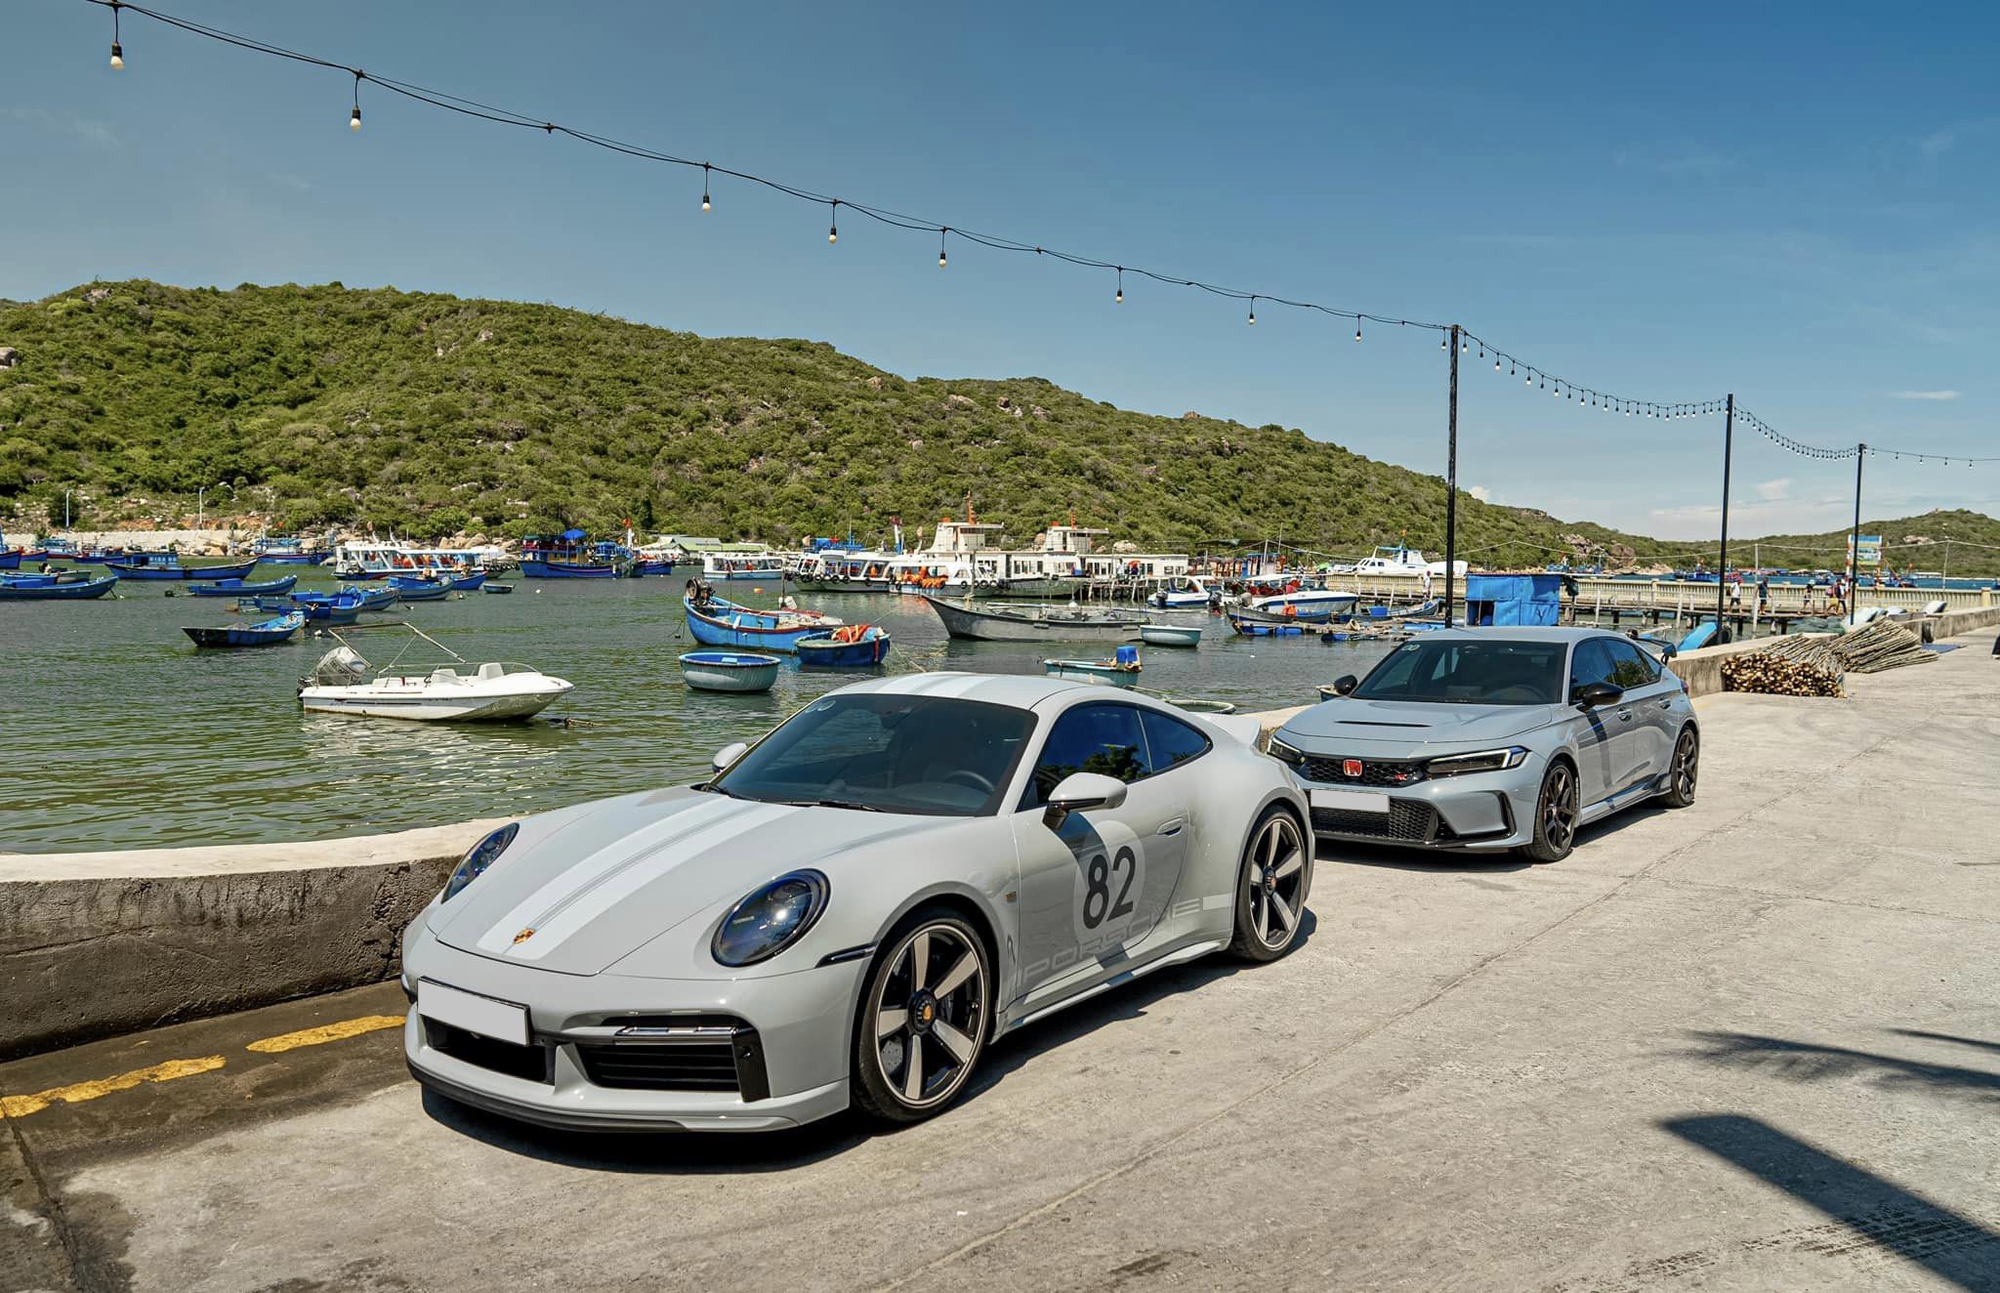 Cường Đô La ‘review’ Porsche 911 số sàn vừa mua giá hơn 19 tỷ đồng: ‘Lái thích, nhưng đi đường dài hơi đuối và ê ẩm chân’ - Ảnh 1.